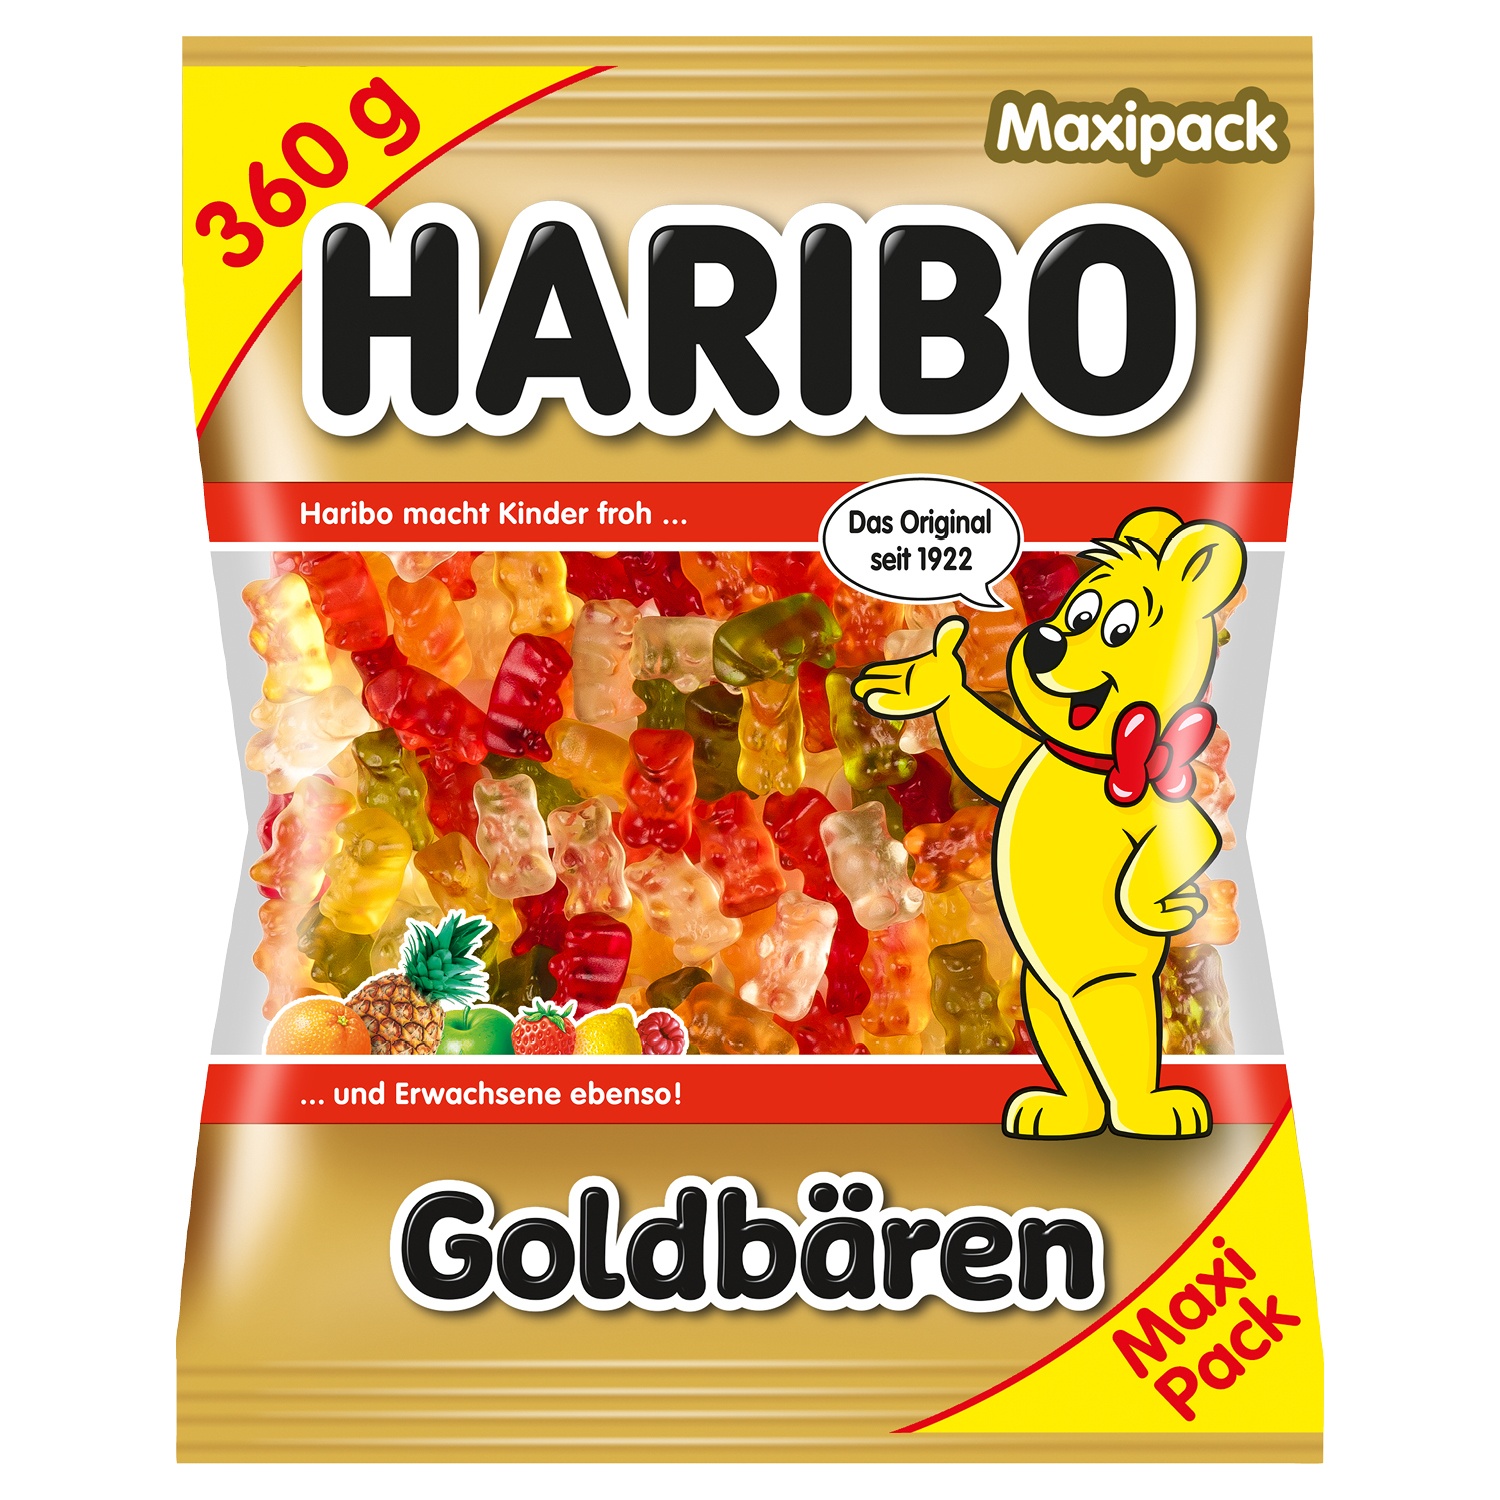 Haribo Goldbären Maxi Pack 360g